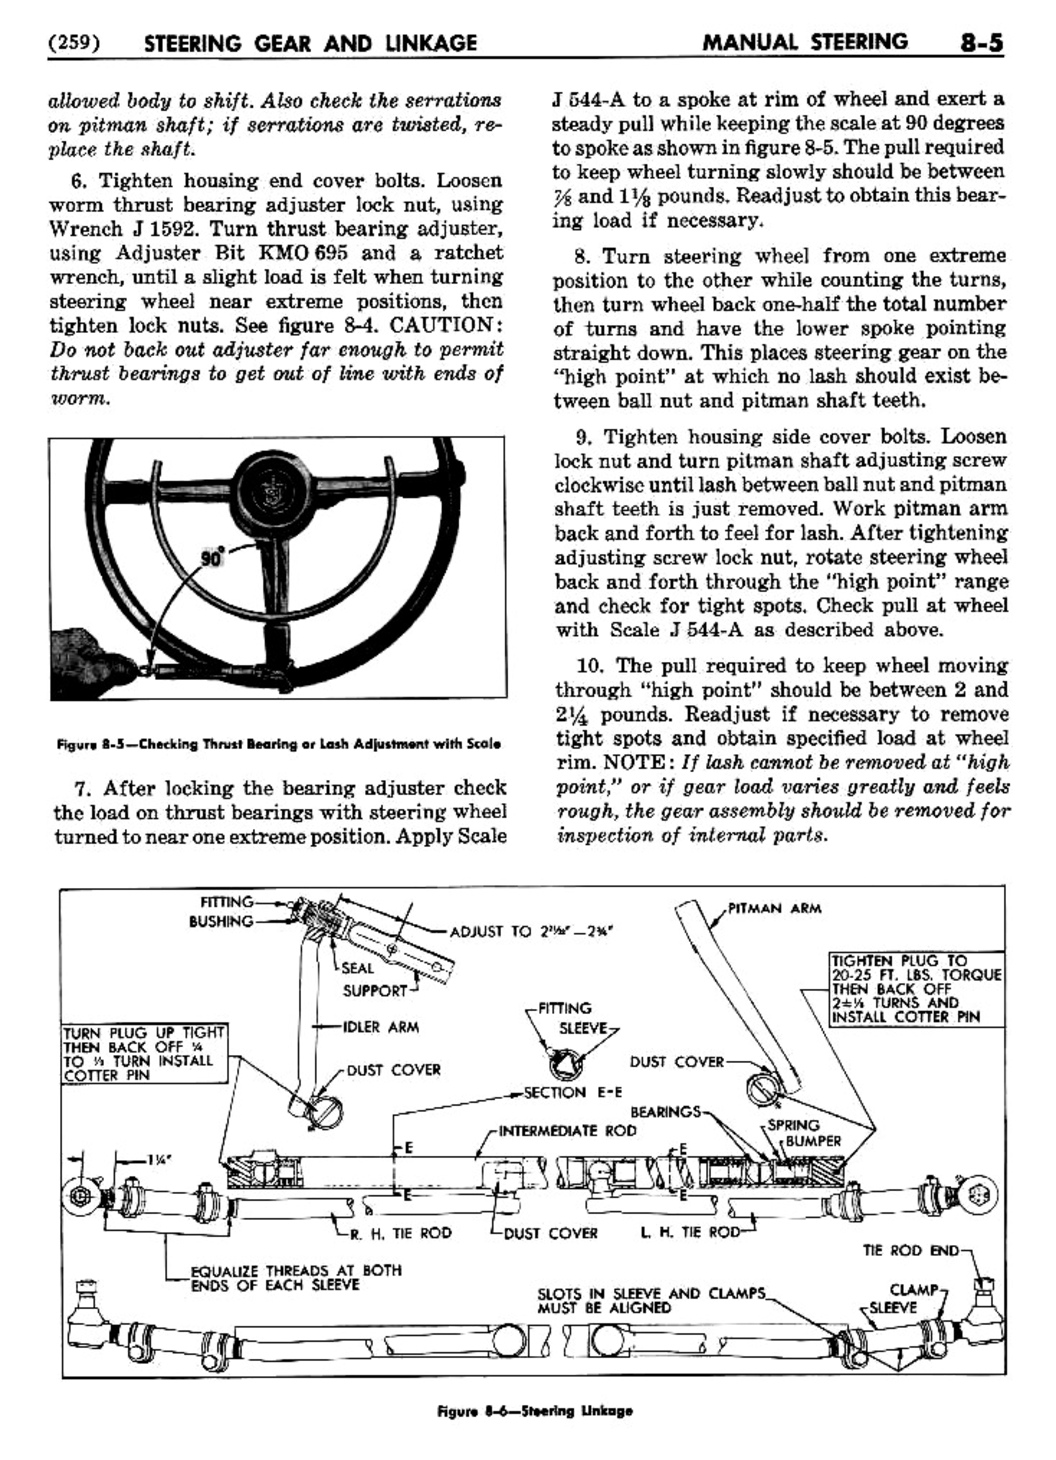 n_09 1954 Buick Shop Manual - Steering-005-005.jpg